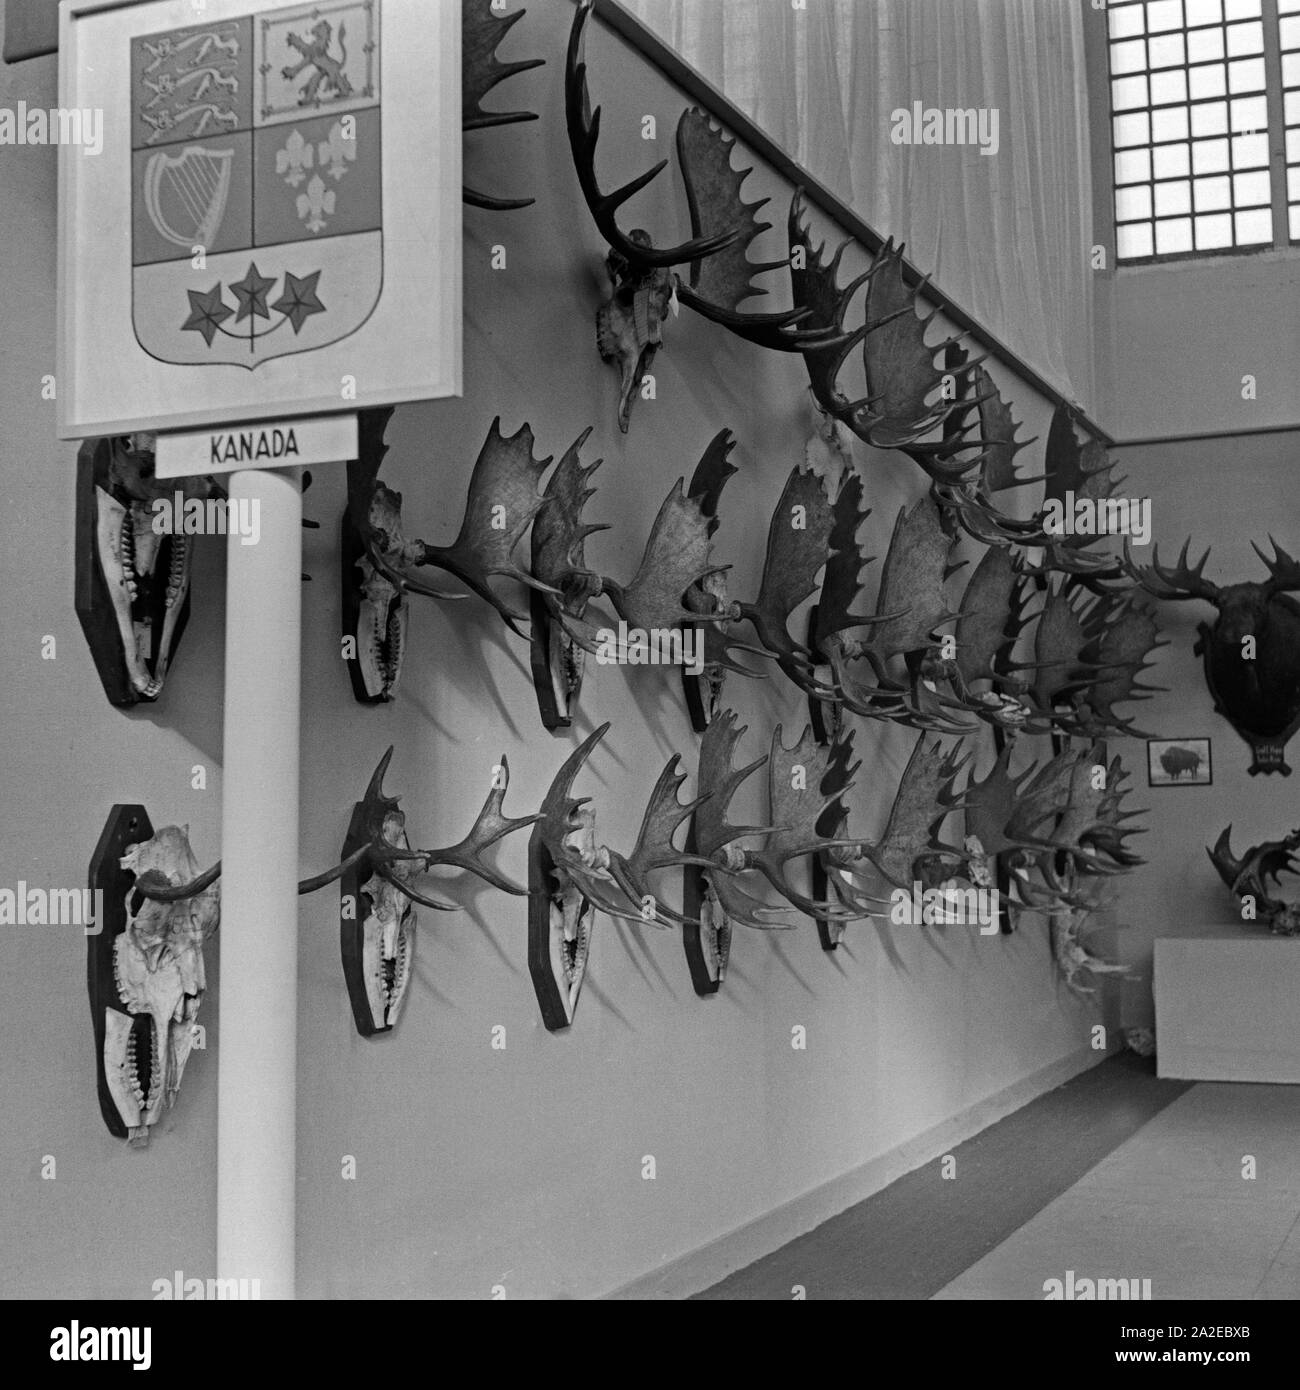 Der Pavillon von Kanada auf der Internationalen Jagdausstellung Berlin 1937 zeigt Elchgeweihe, Deutschland 1930er Jahre. Der Pavillon von Kanada an der internationalen Jagd Ausstellung zeigt Elch Geweih, Berlin 1937, in Deutschland 1930. Stockfoto